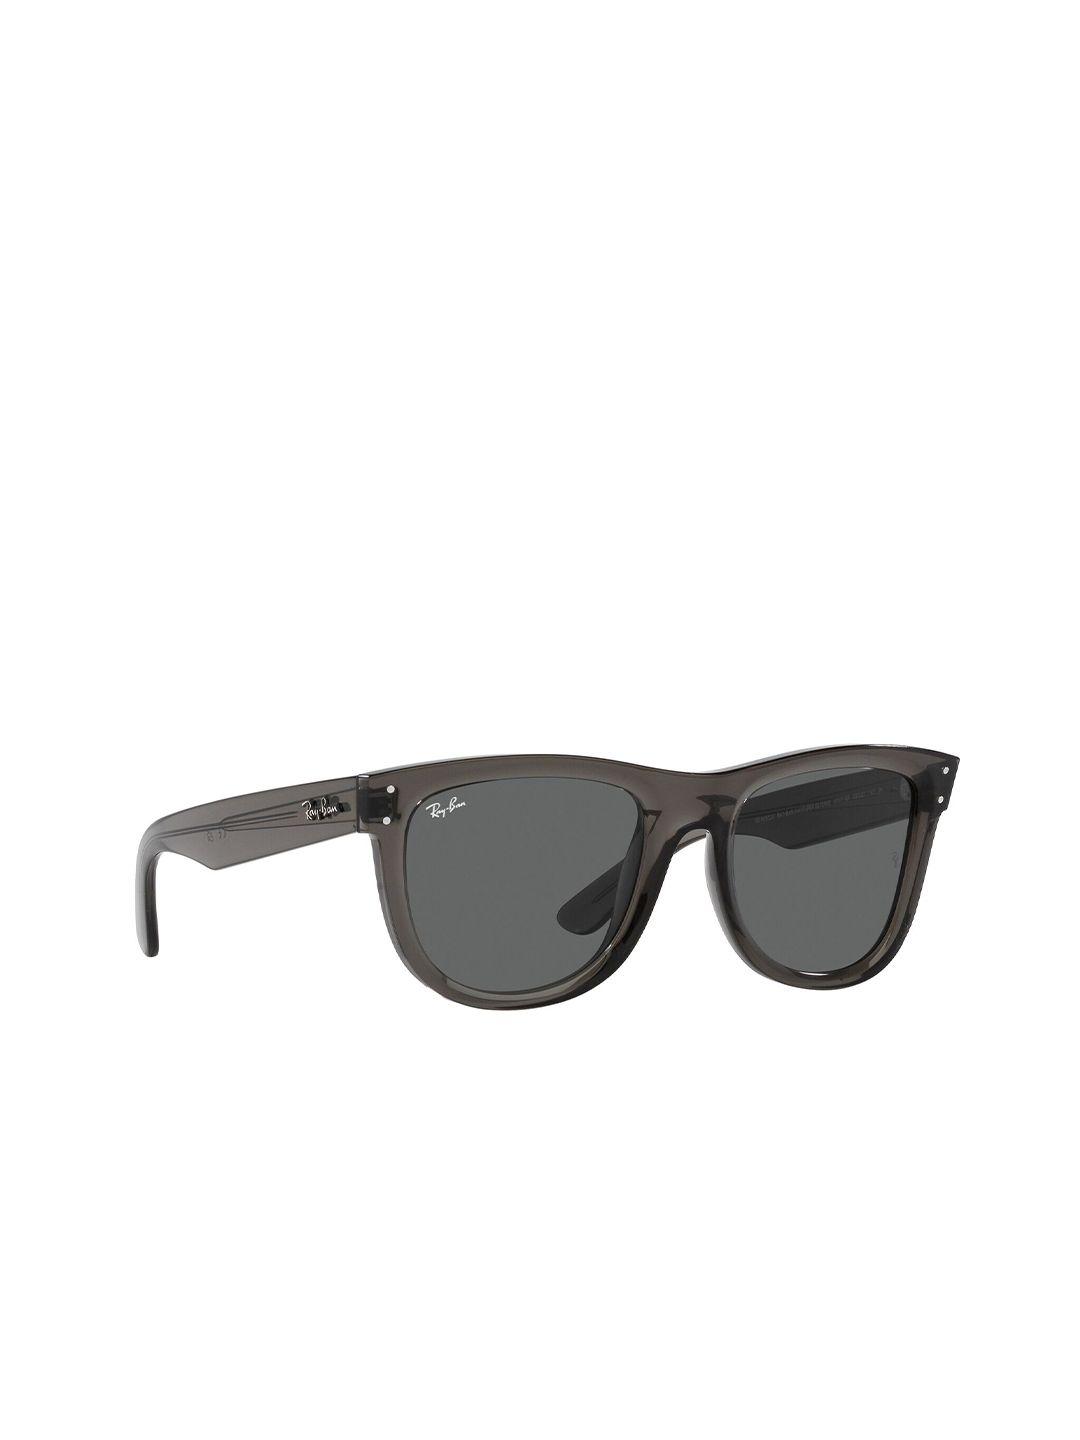 kastner unisex square uv protected lens sunglasses